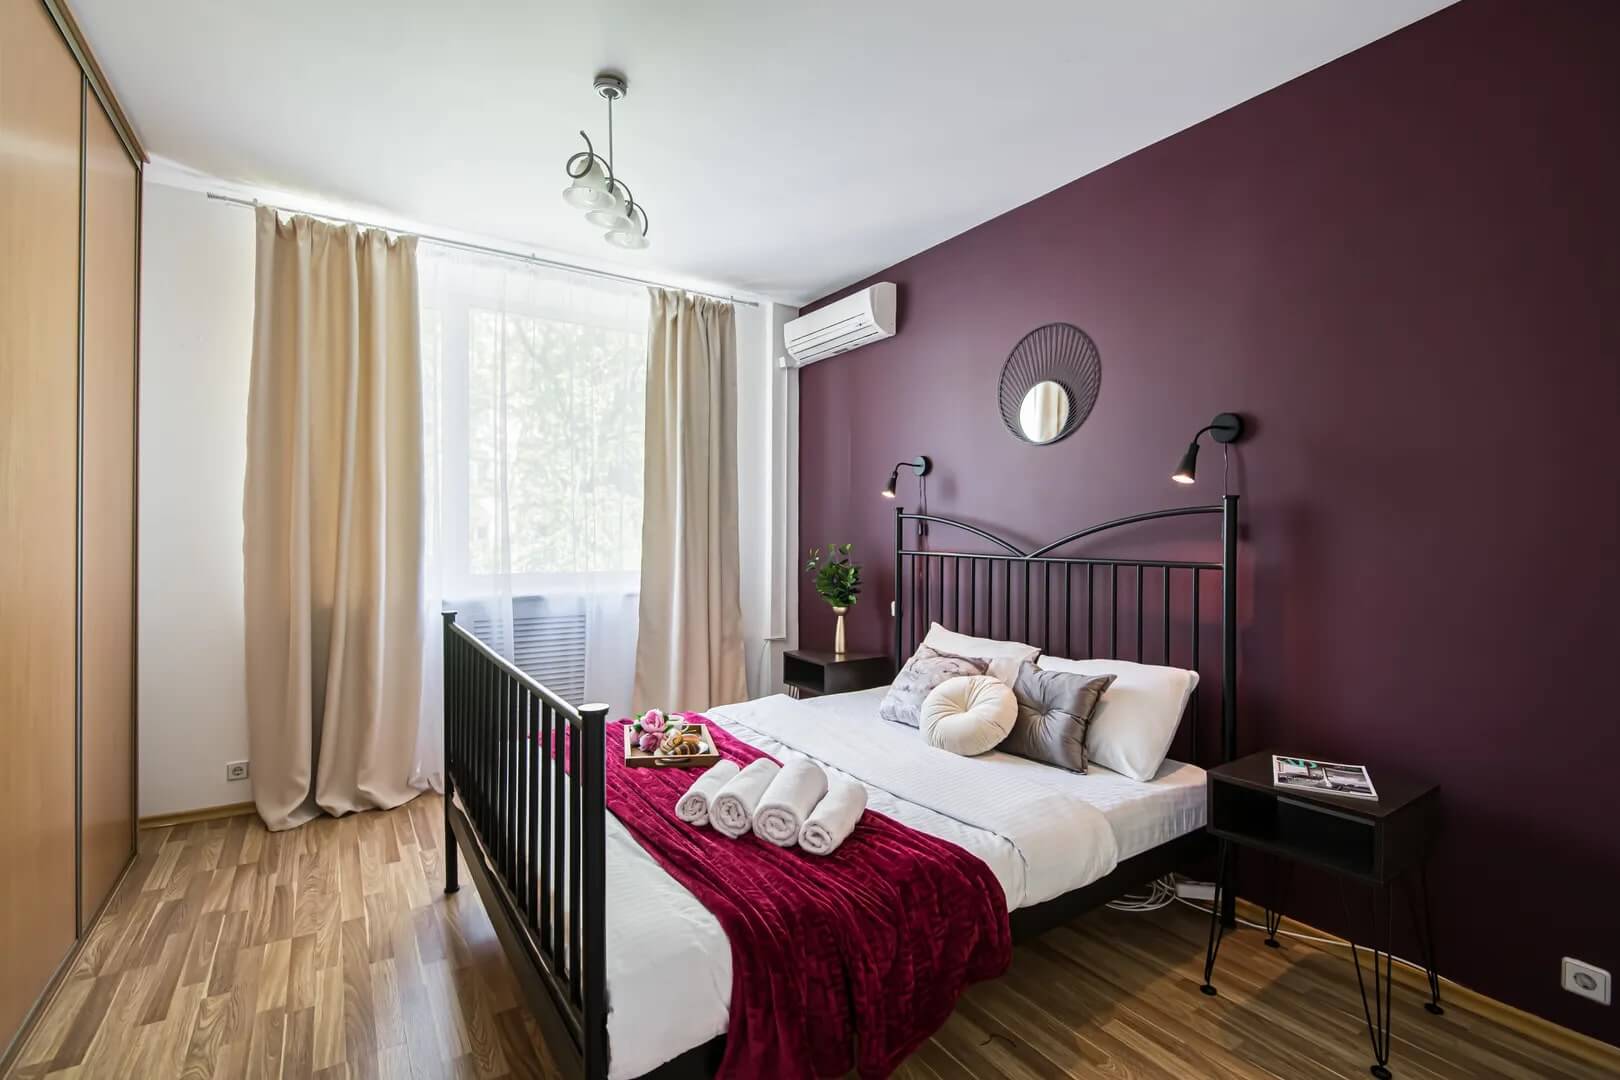 Стена у кровати и саше - необычного, бордового цвета.